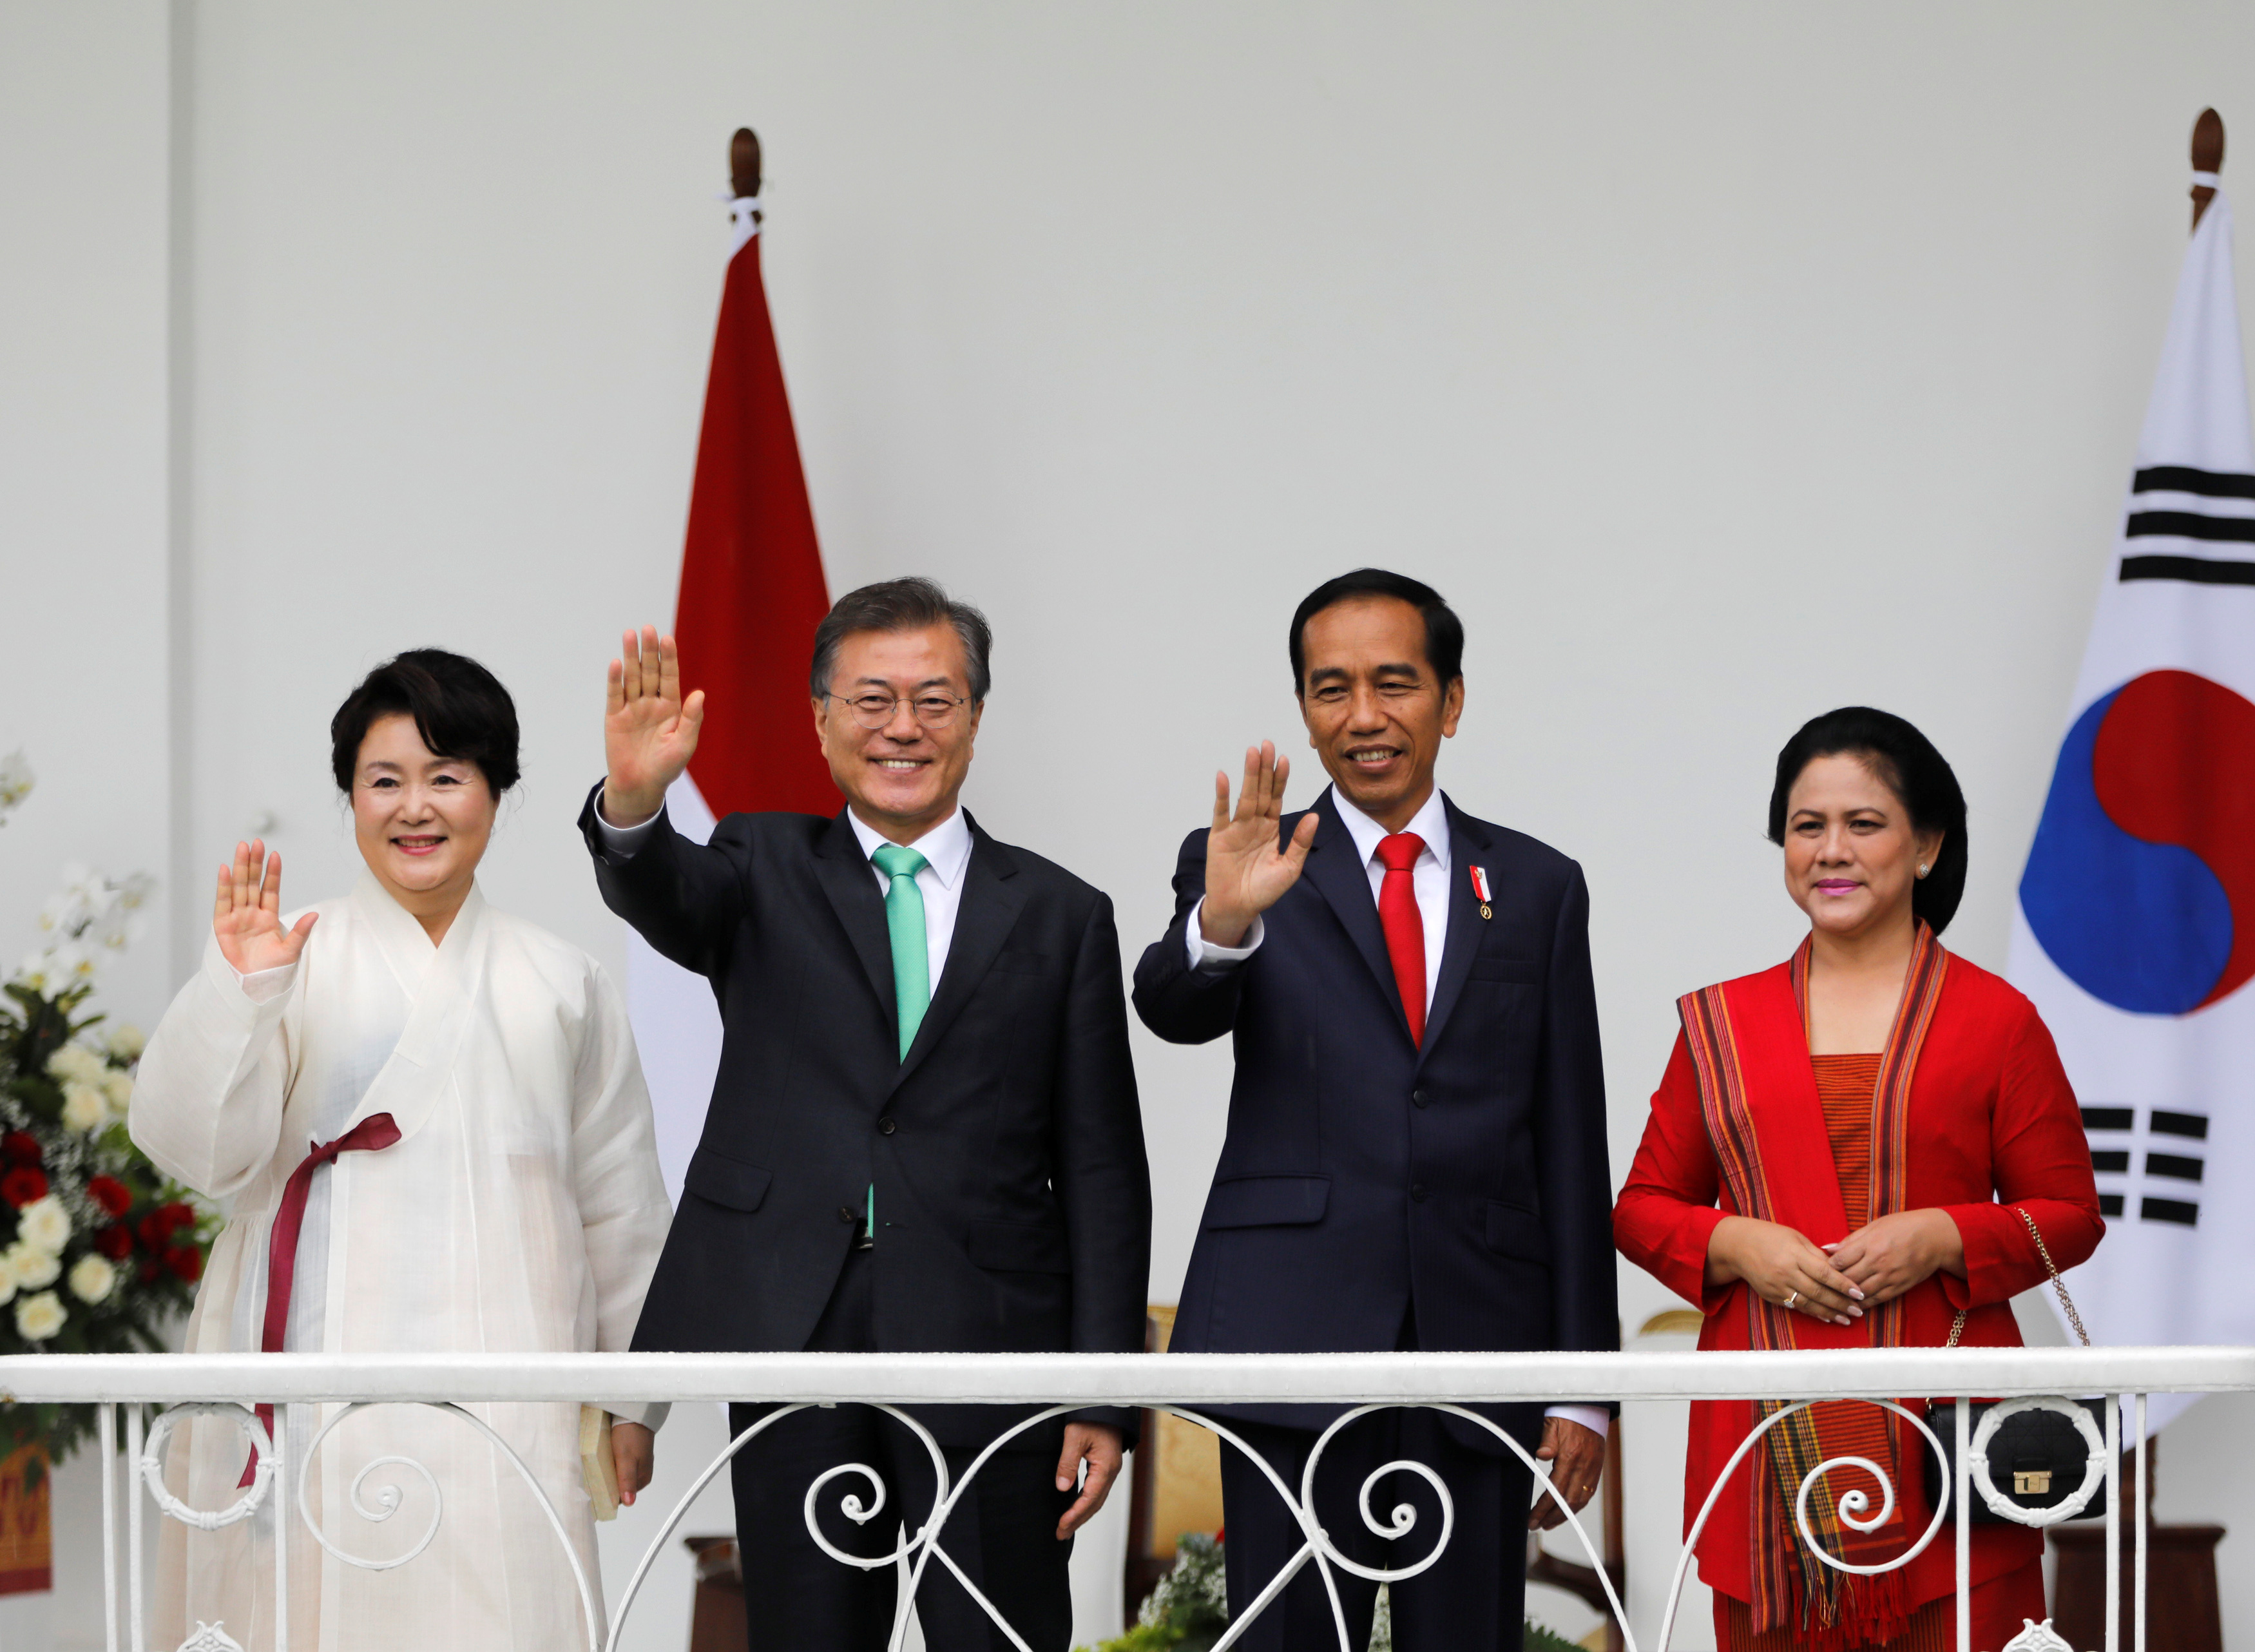 رئيس إندونيسيا يستقبل رئيس كوريا الجنوبية